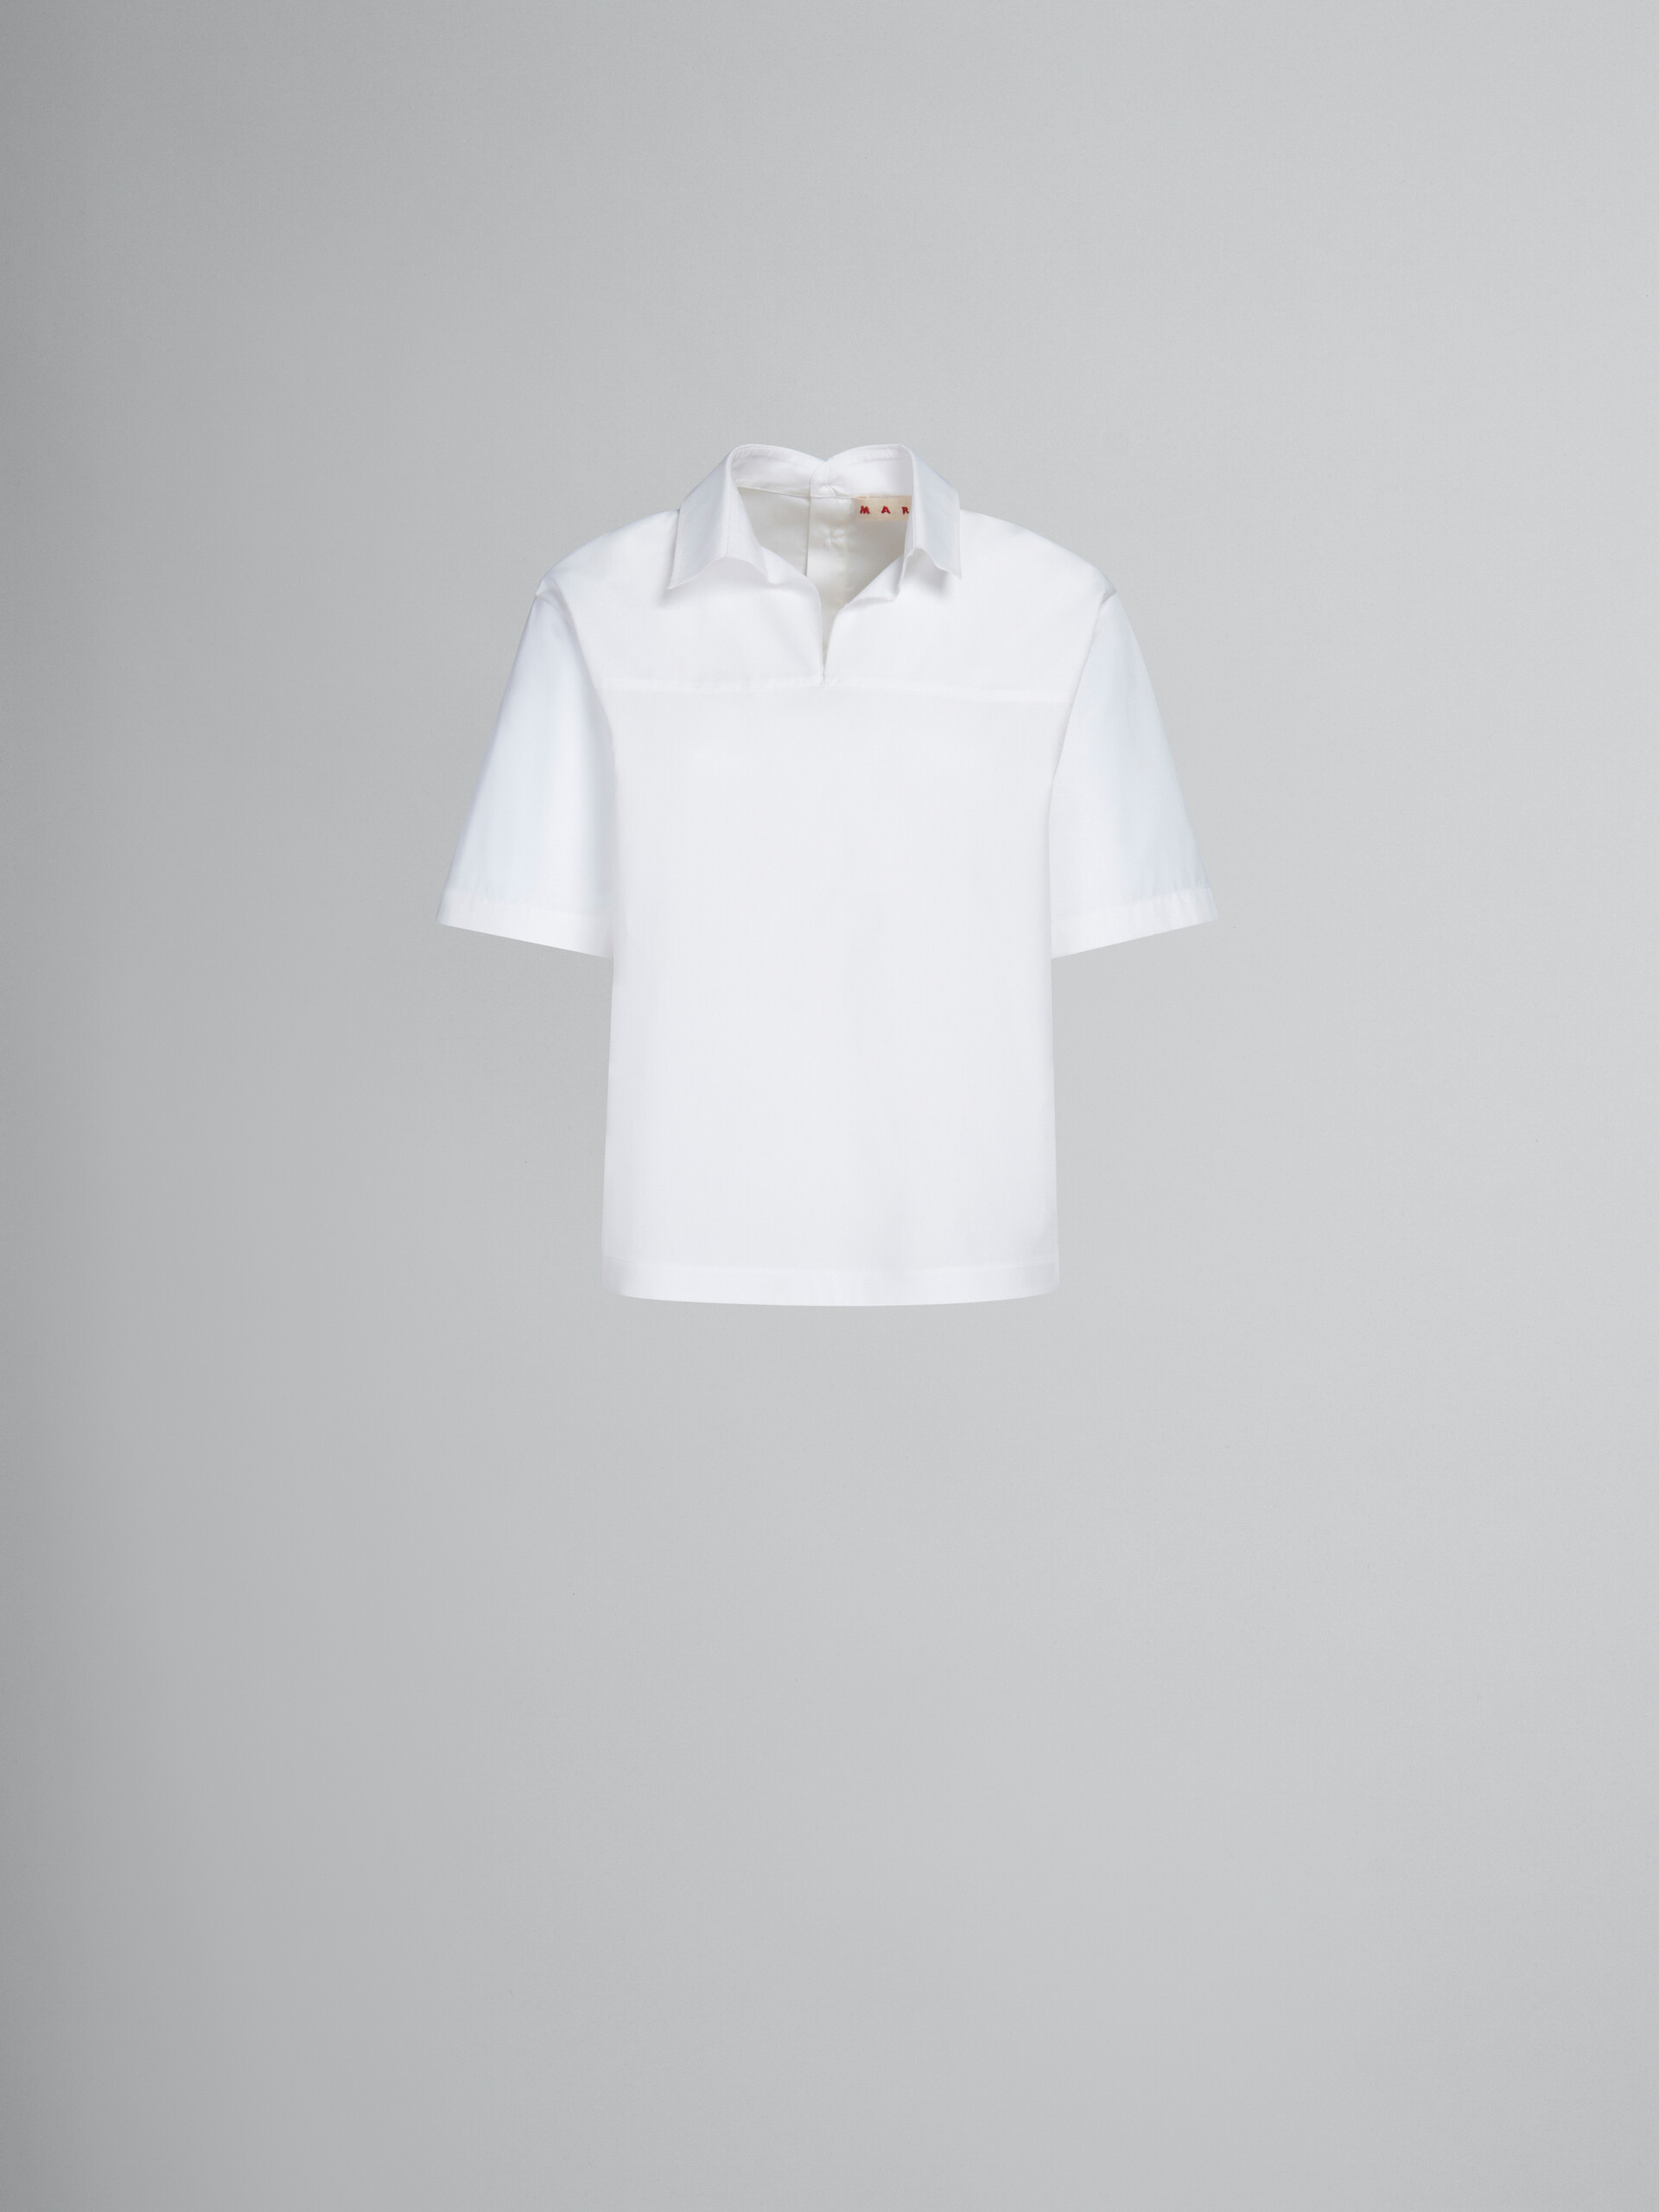 Blusa blanca de popelina ecológica con parte trasera estilo polo - Camisas - Image 1